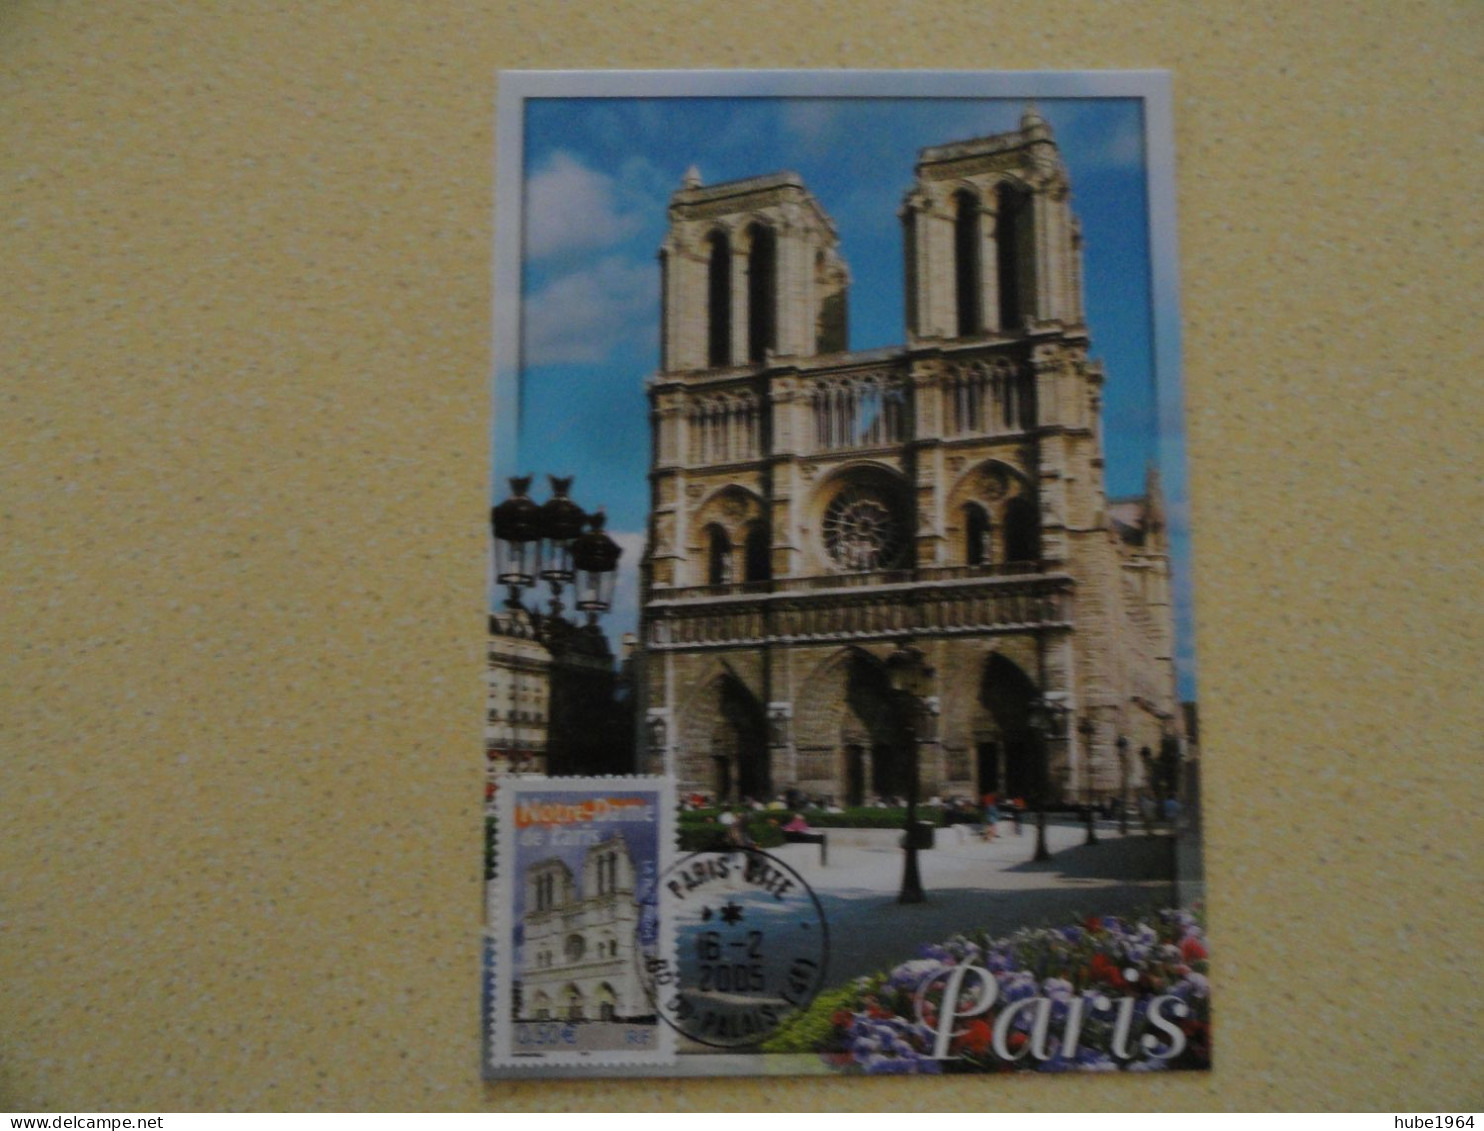 CARTE MAXIMUM CARD LA CATHEDRALE NOTRE DAME DE PARIS OBL ORD PARIS CITE FRANCE - Eglises Et Cathédrales